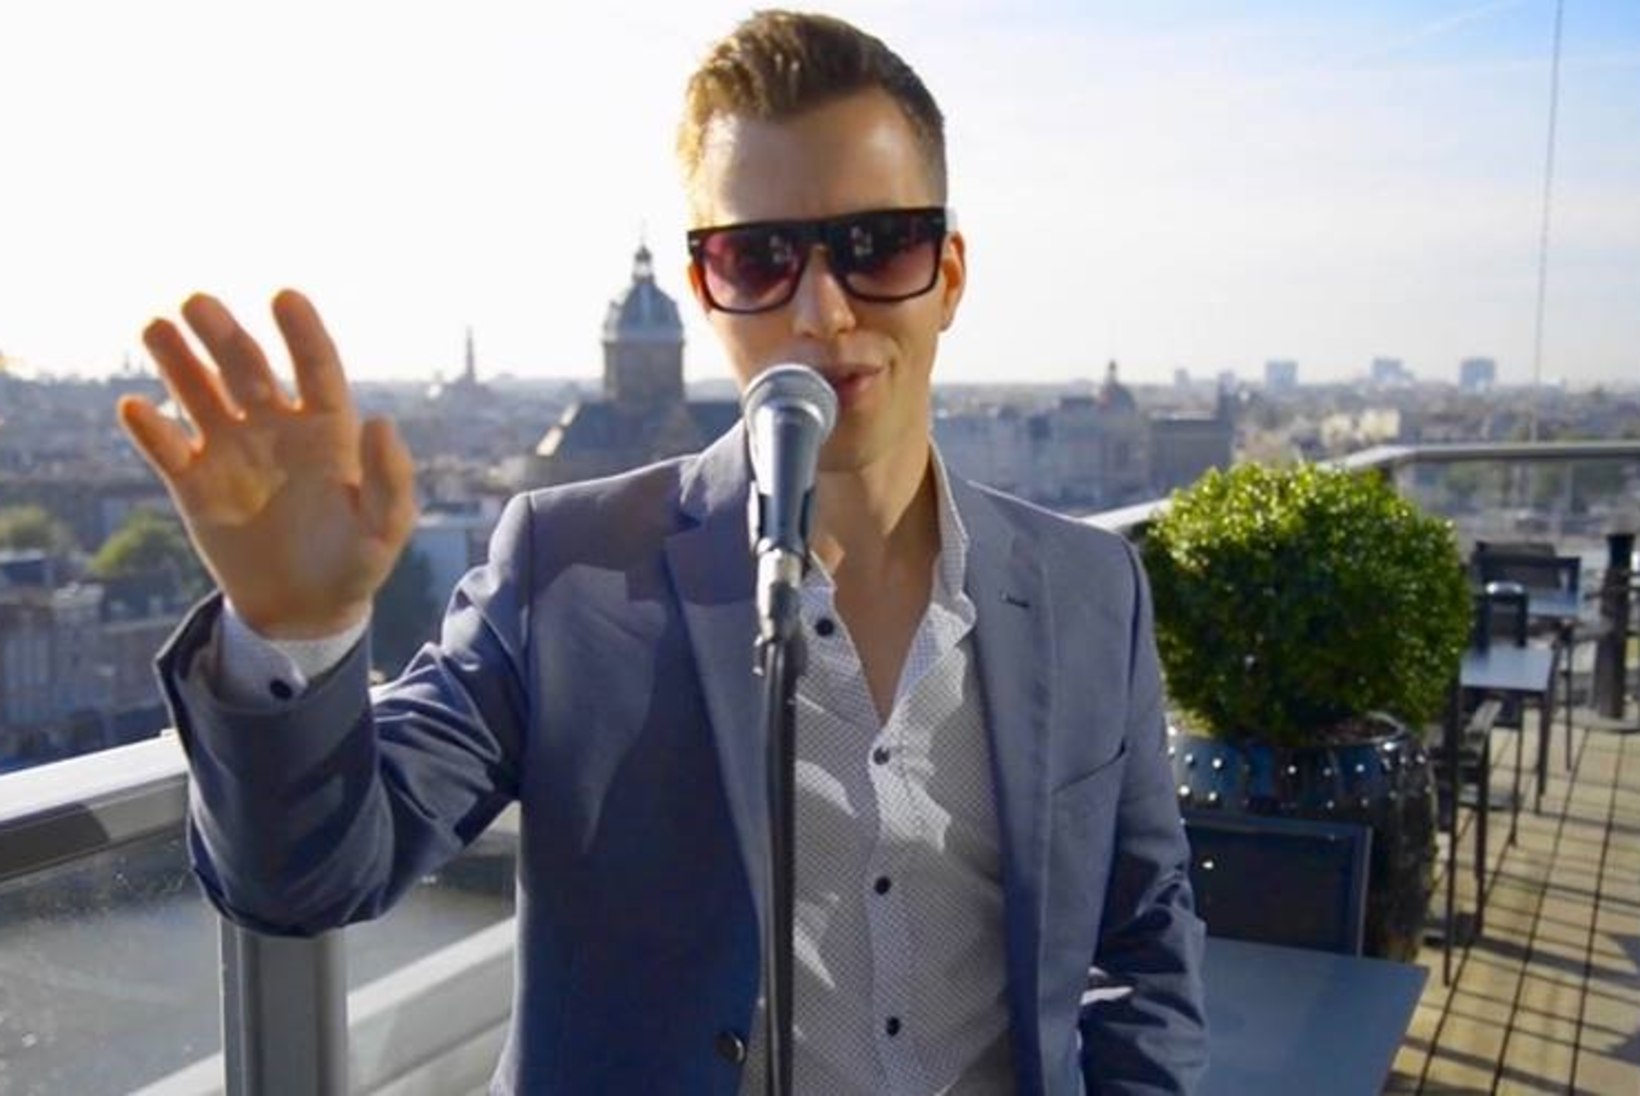 Eesti noormees pääseb Grammy’de galale koos staaridega punasele vaibale kõndima